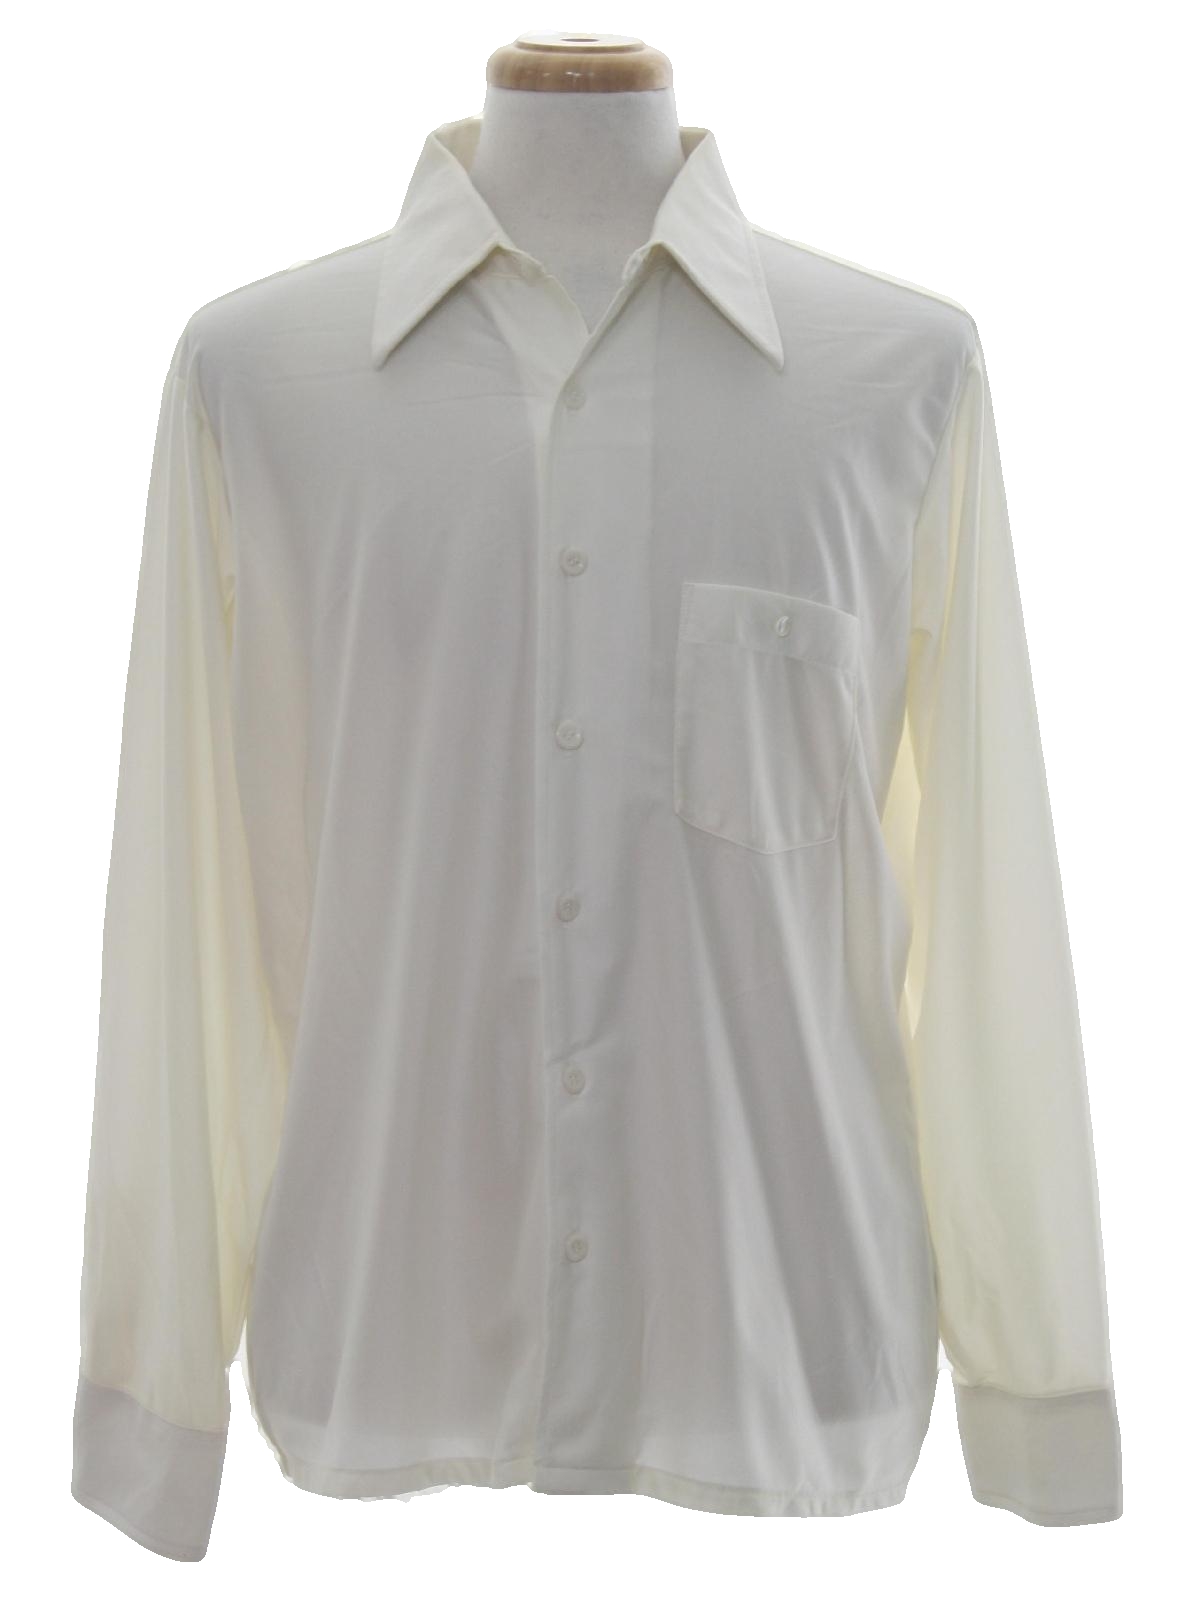 70's Arrow Disco Shirt: 70s -Arrow- Mens white background Quiana nylon ...